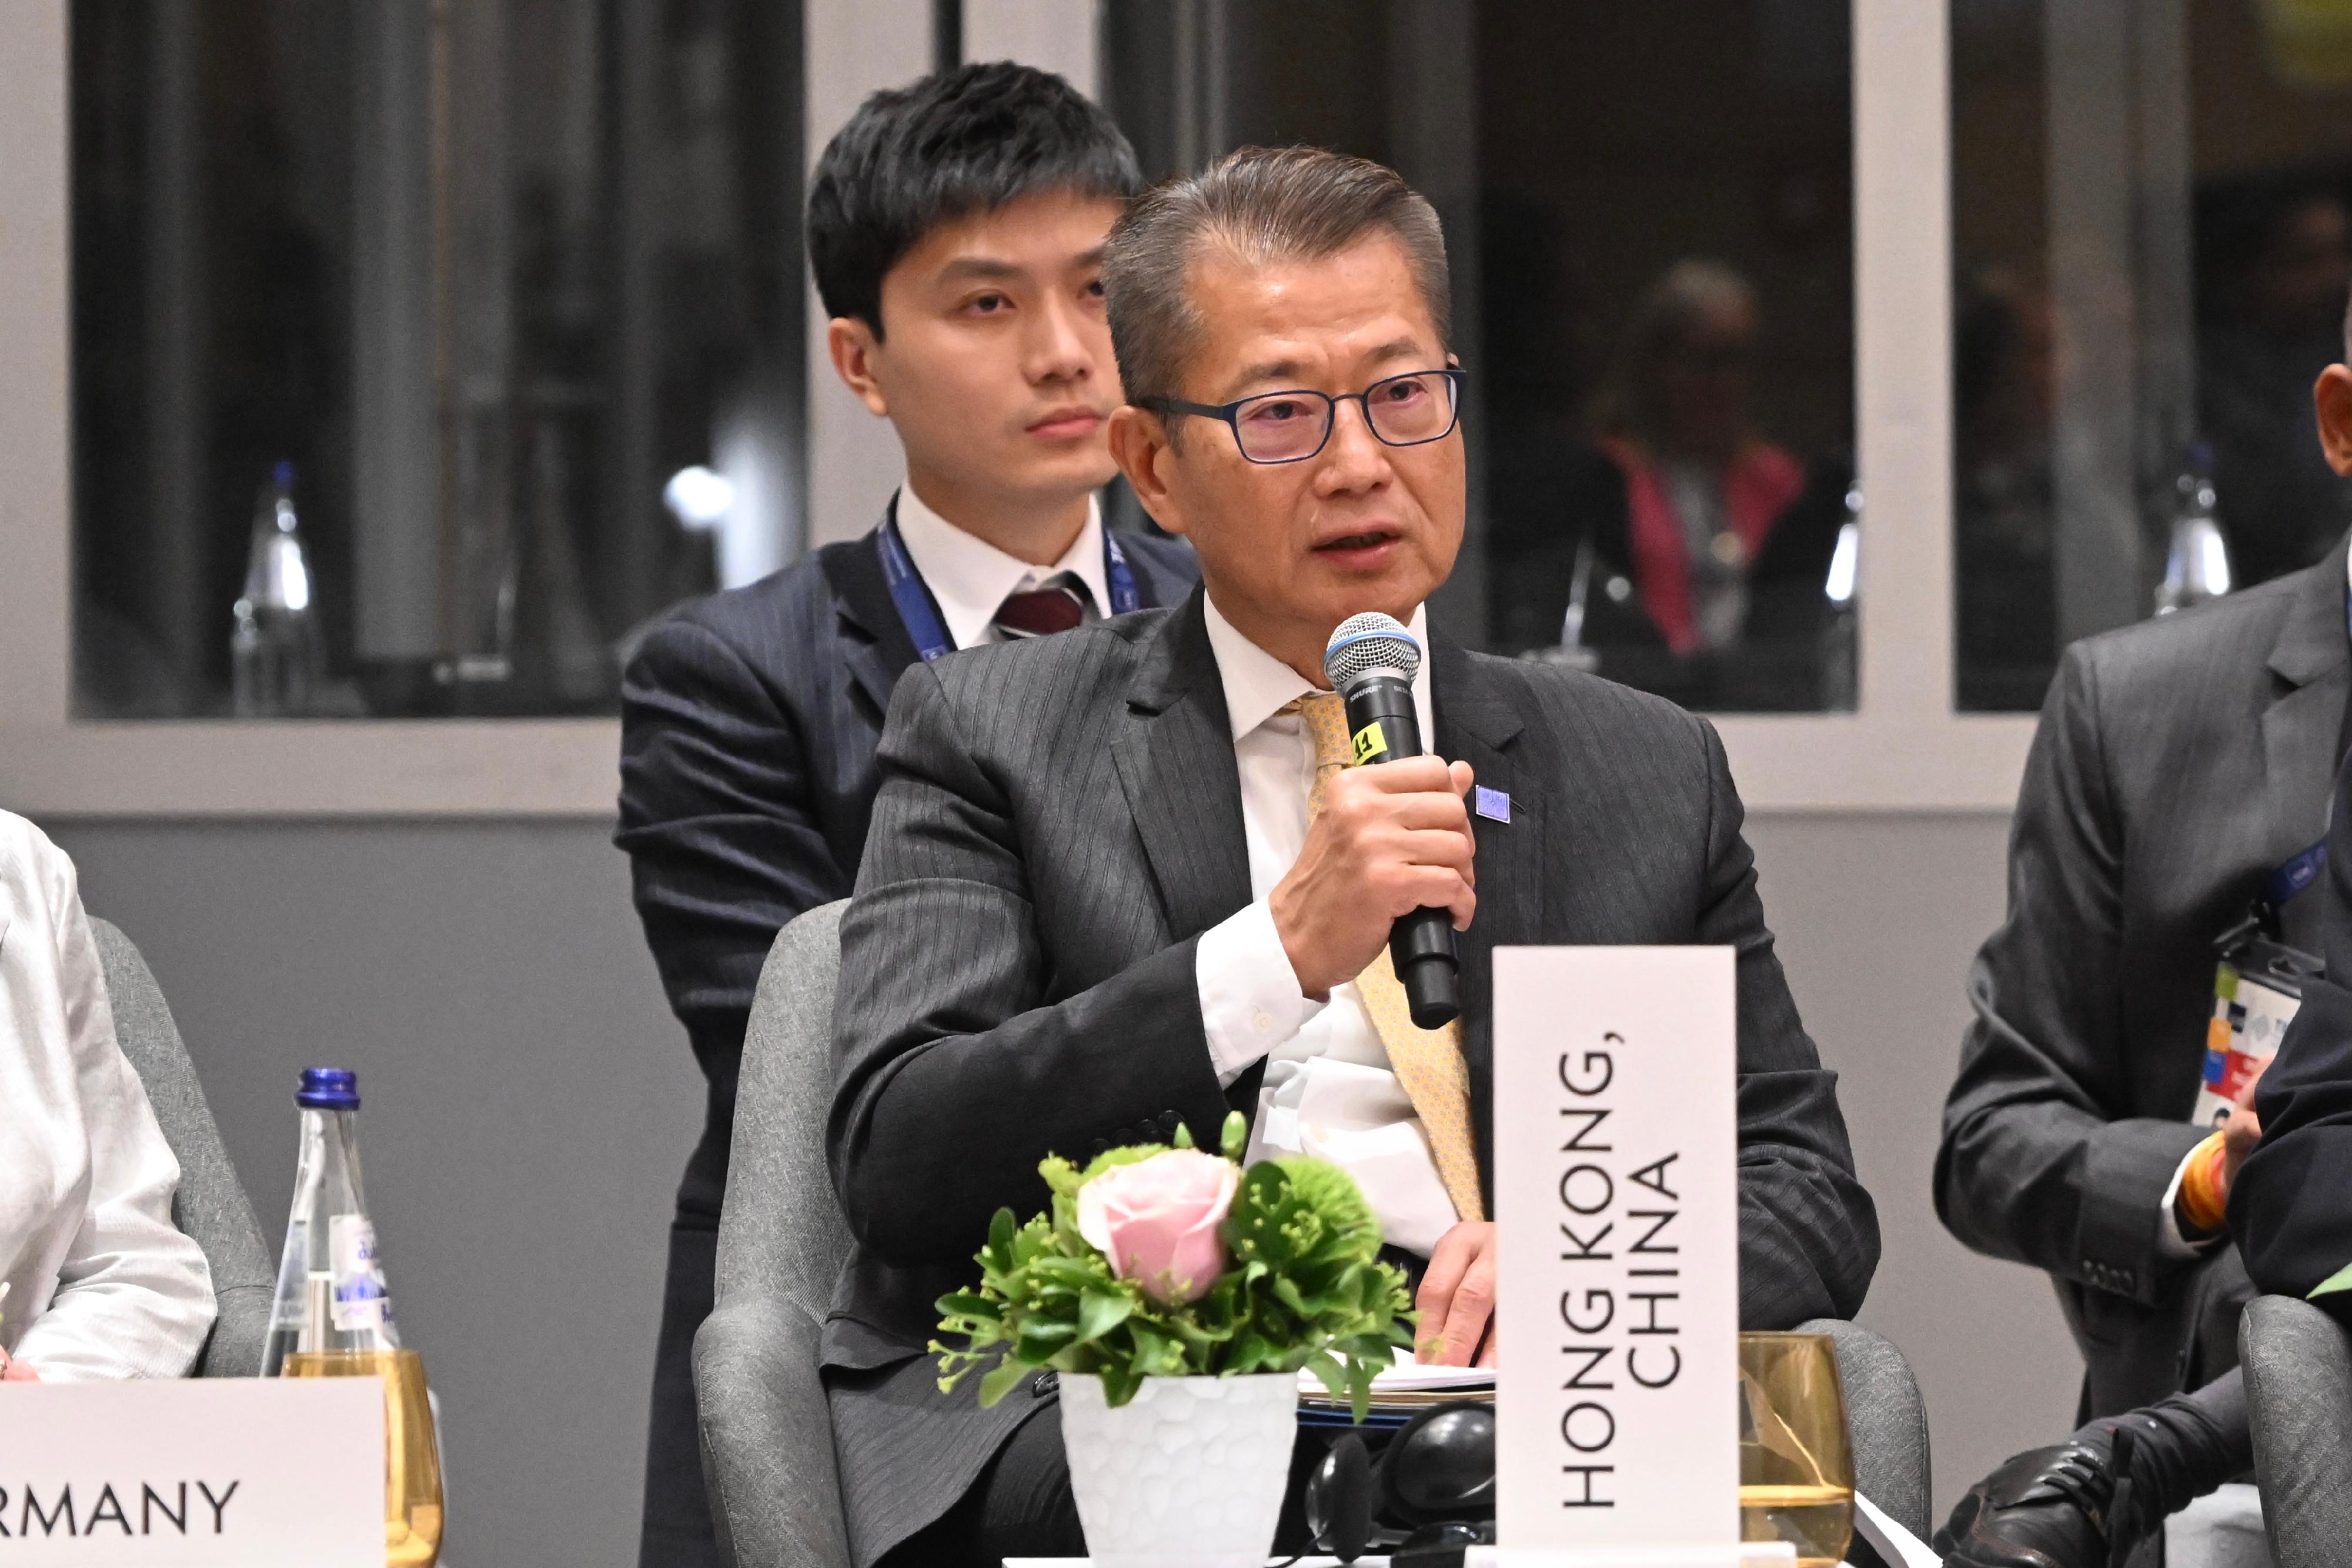 陳茂波在亞開行理事會全體大會上發言。